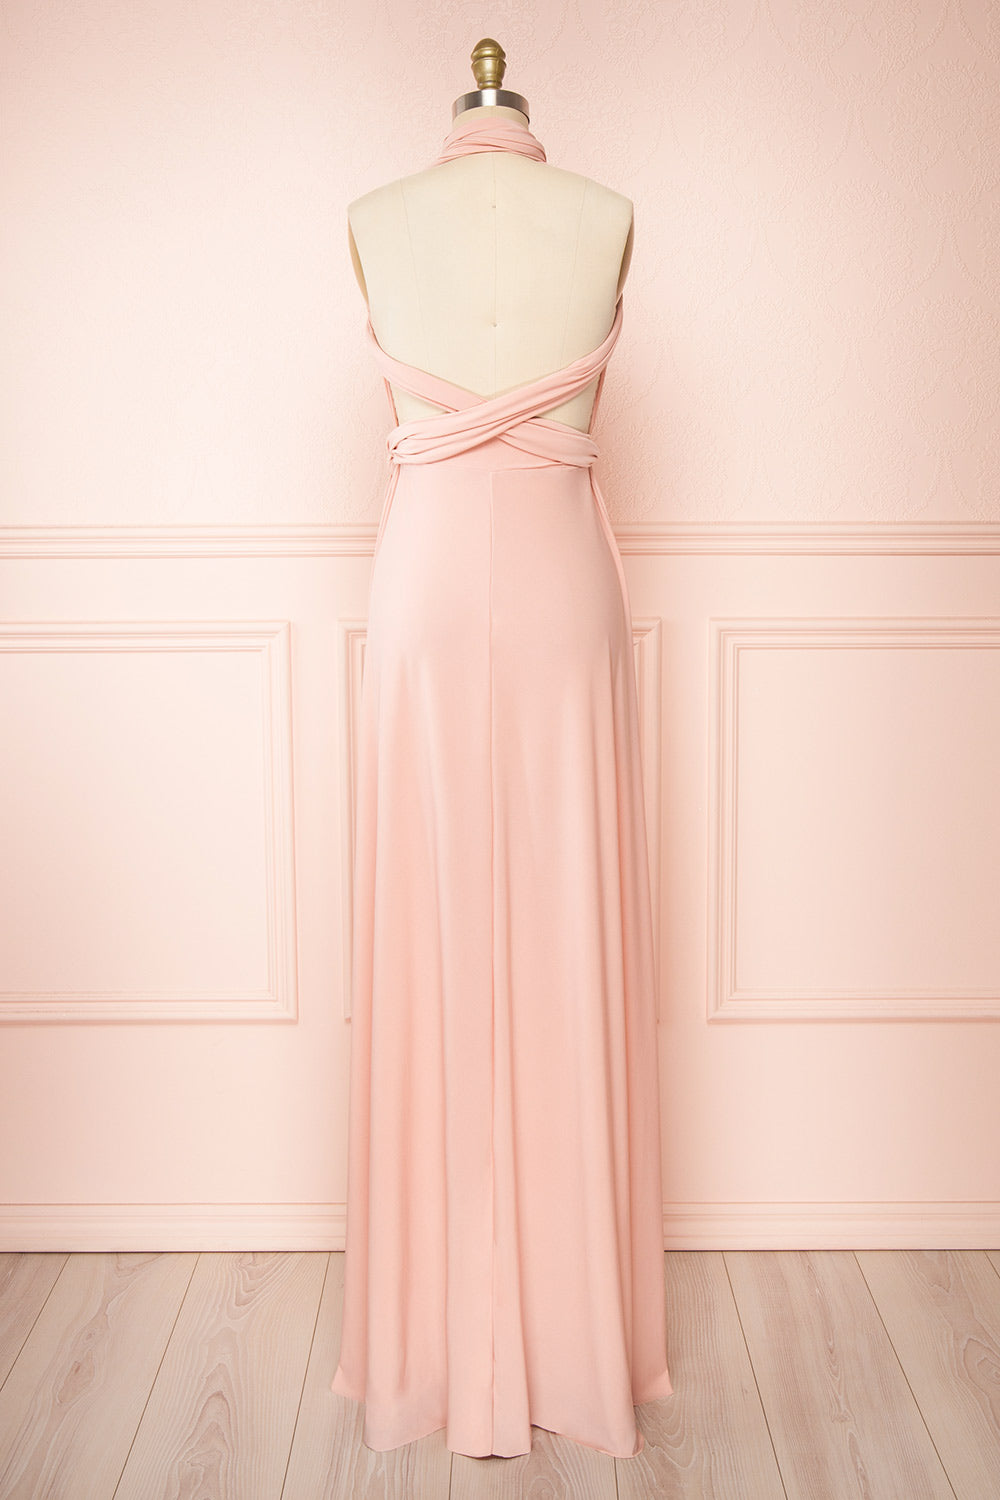 Violaine Blush Convertible Maxi Dress | Boutique 1861 back view